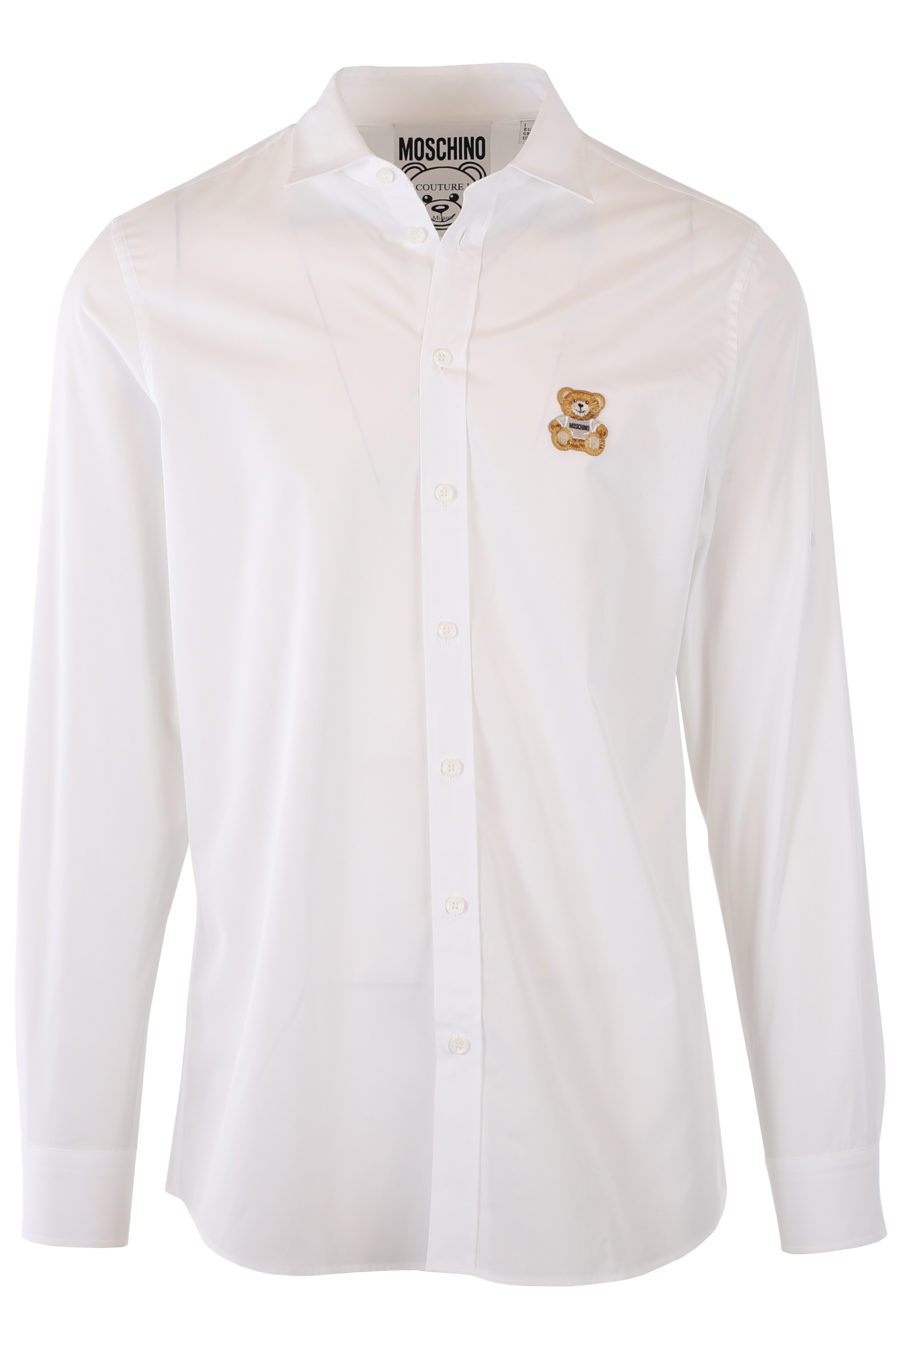 Camisa blanca con logo oso - IMG 9303